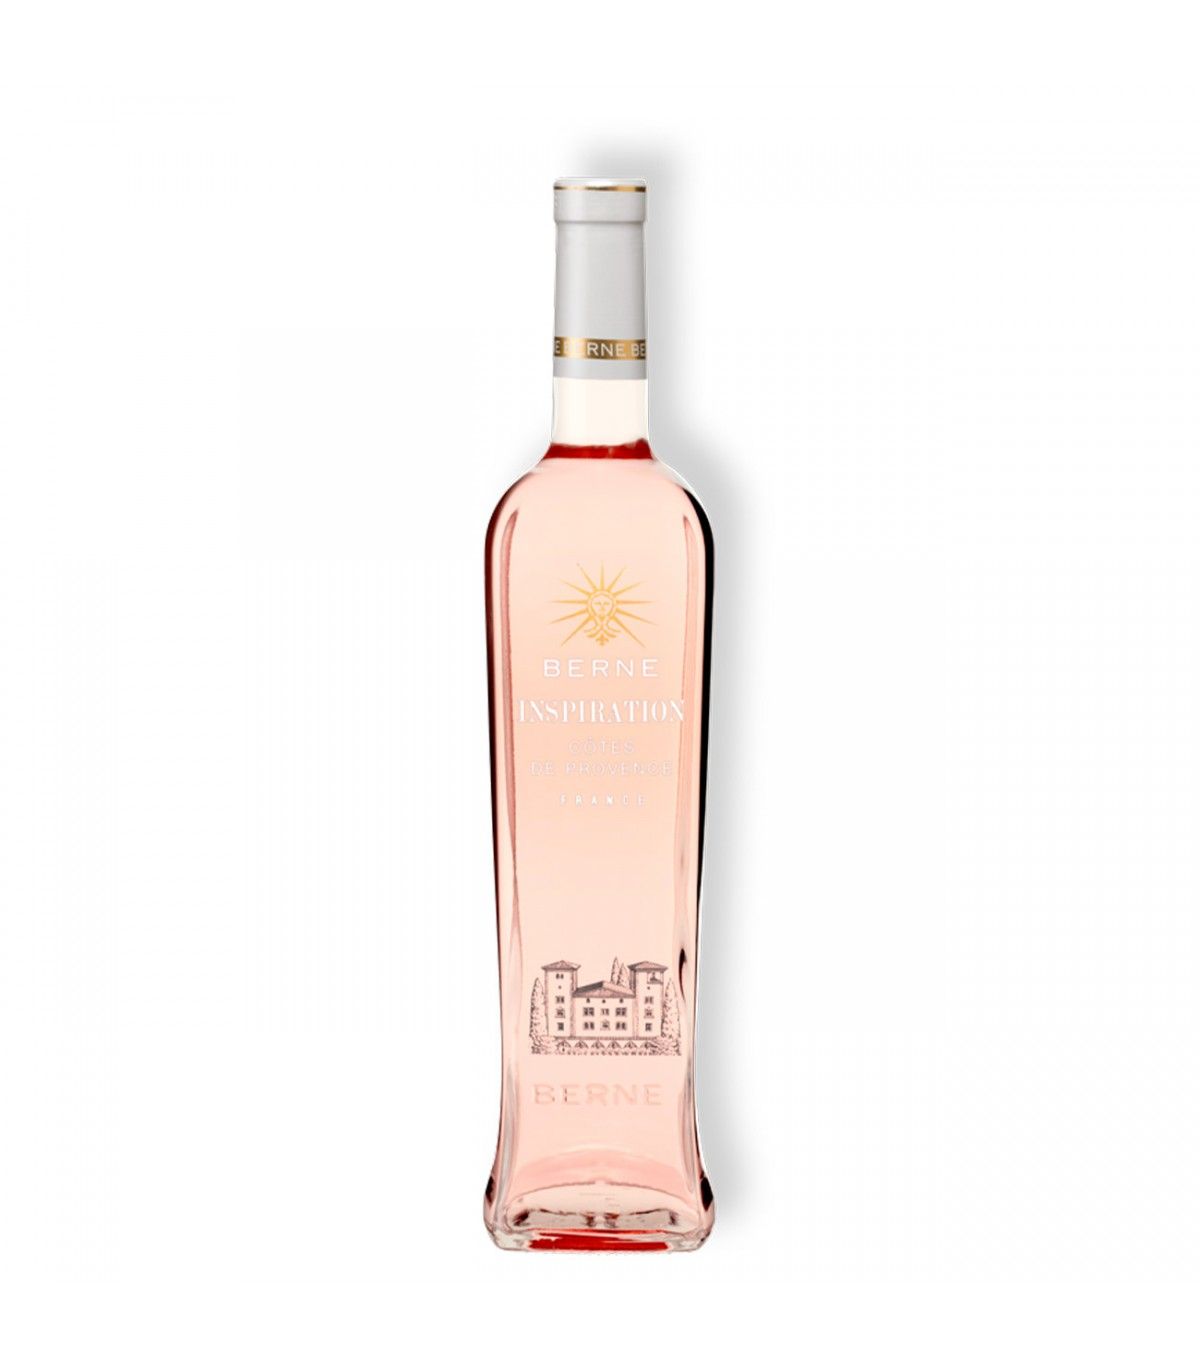 Comment bien servir un vin rosé ? – Château de Berne